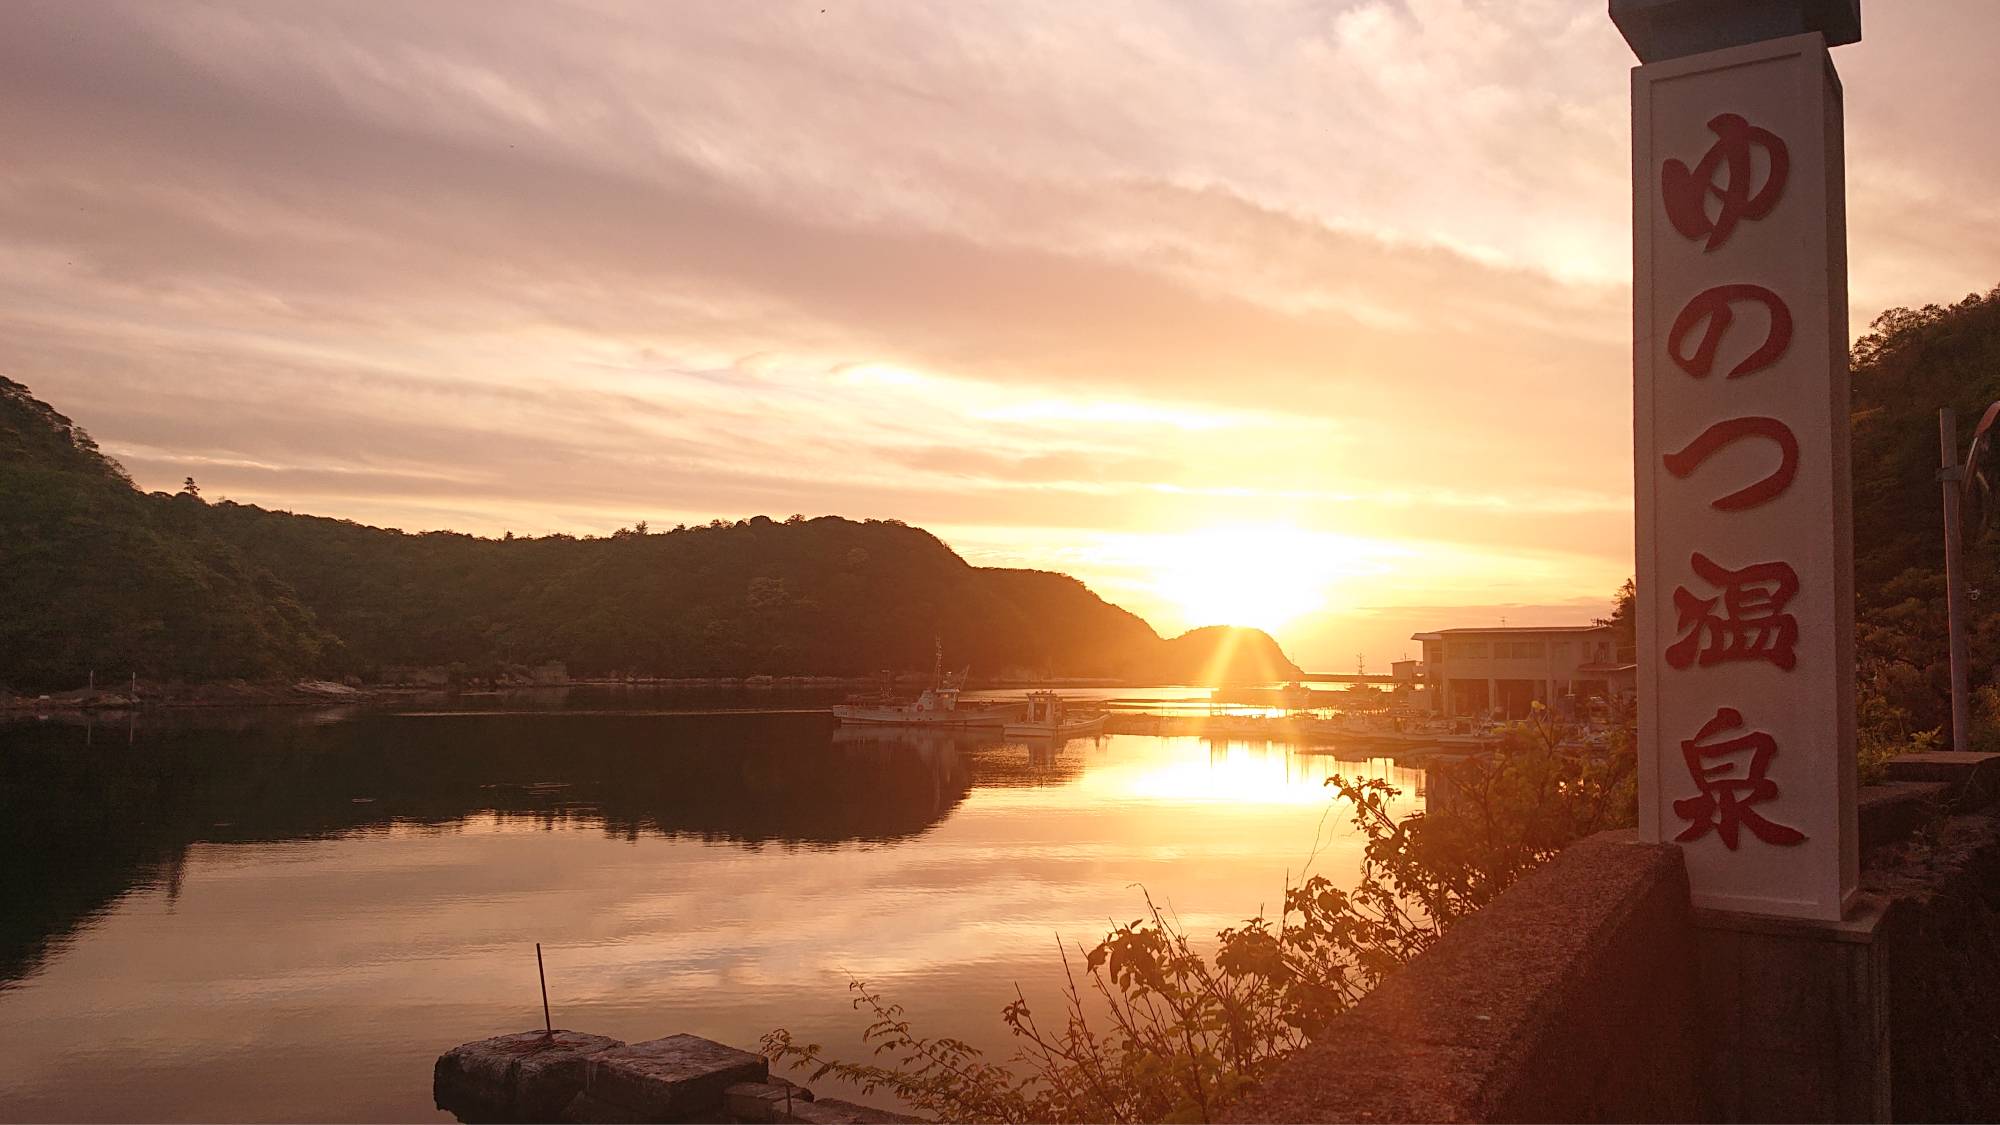 ・〔温泉津温泉〕ゆのつ温泉から眺める夕陽。日本海へと沈む夕日をお楽しみいただけます